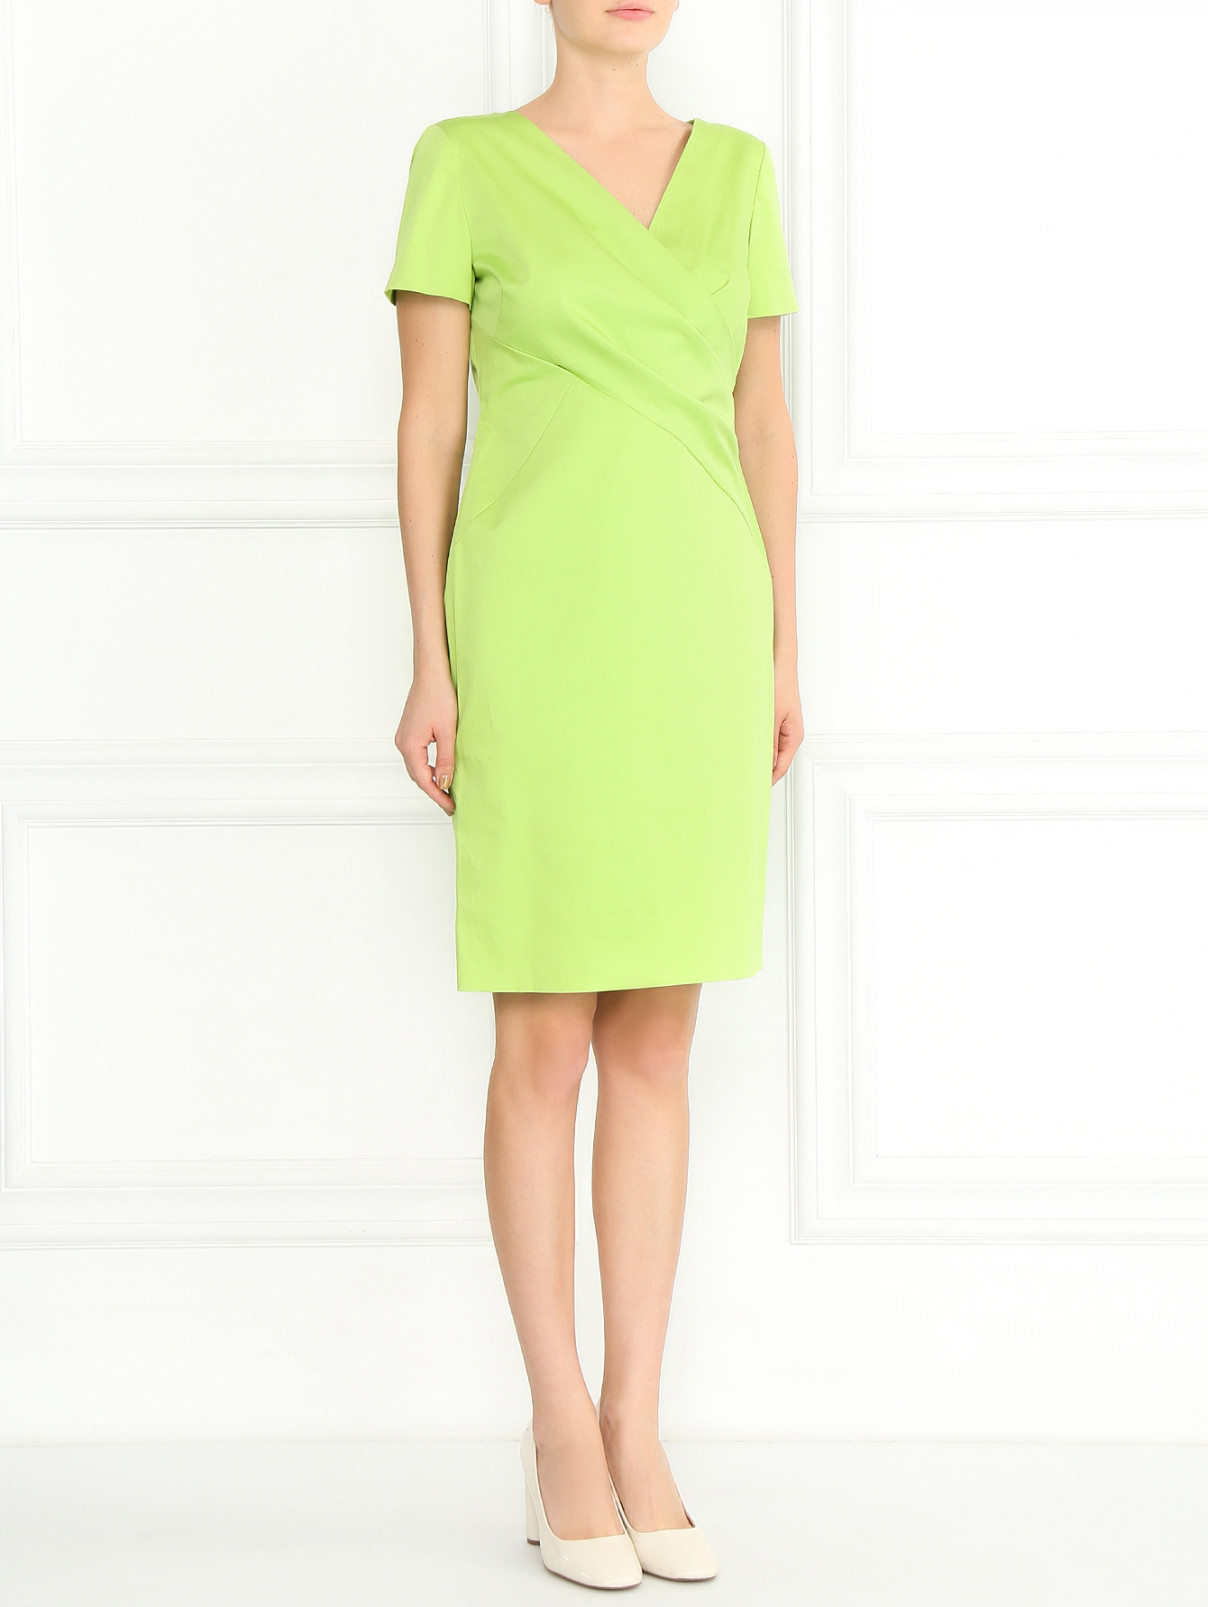 Платье-футляр из хлопка с драпировкой Moschino Cheap&Chic  –  Модель Общий вид  – Цвет:  Зеленый